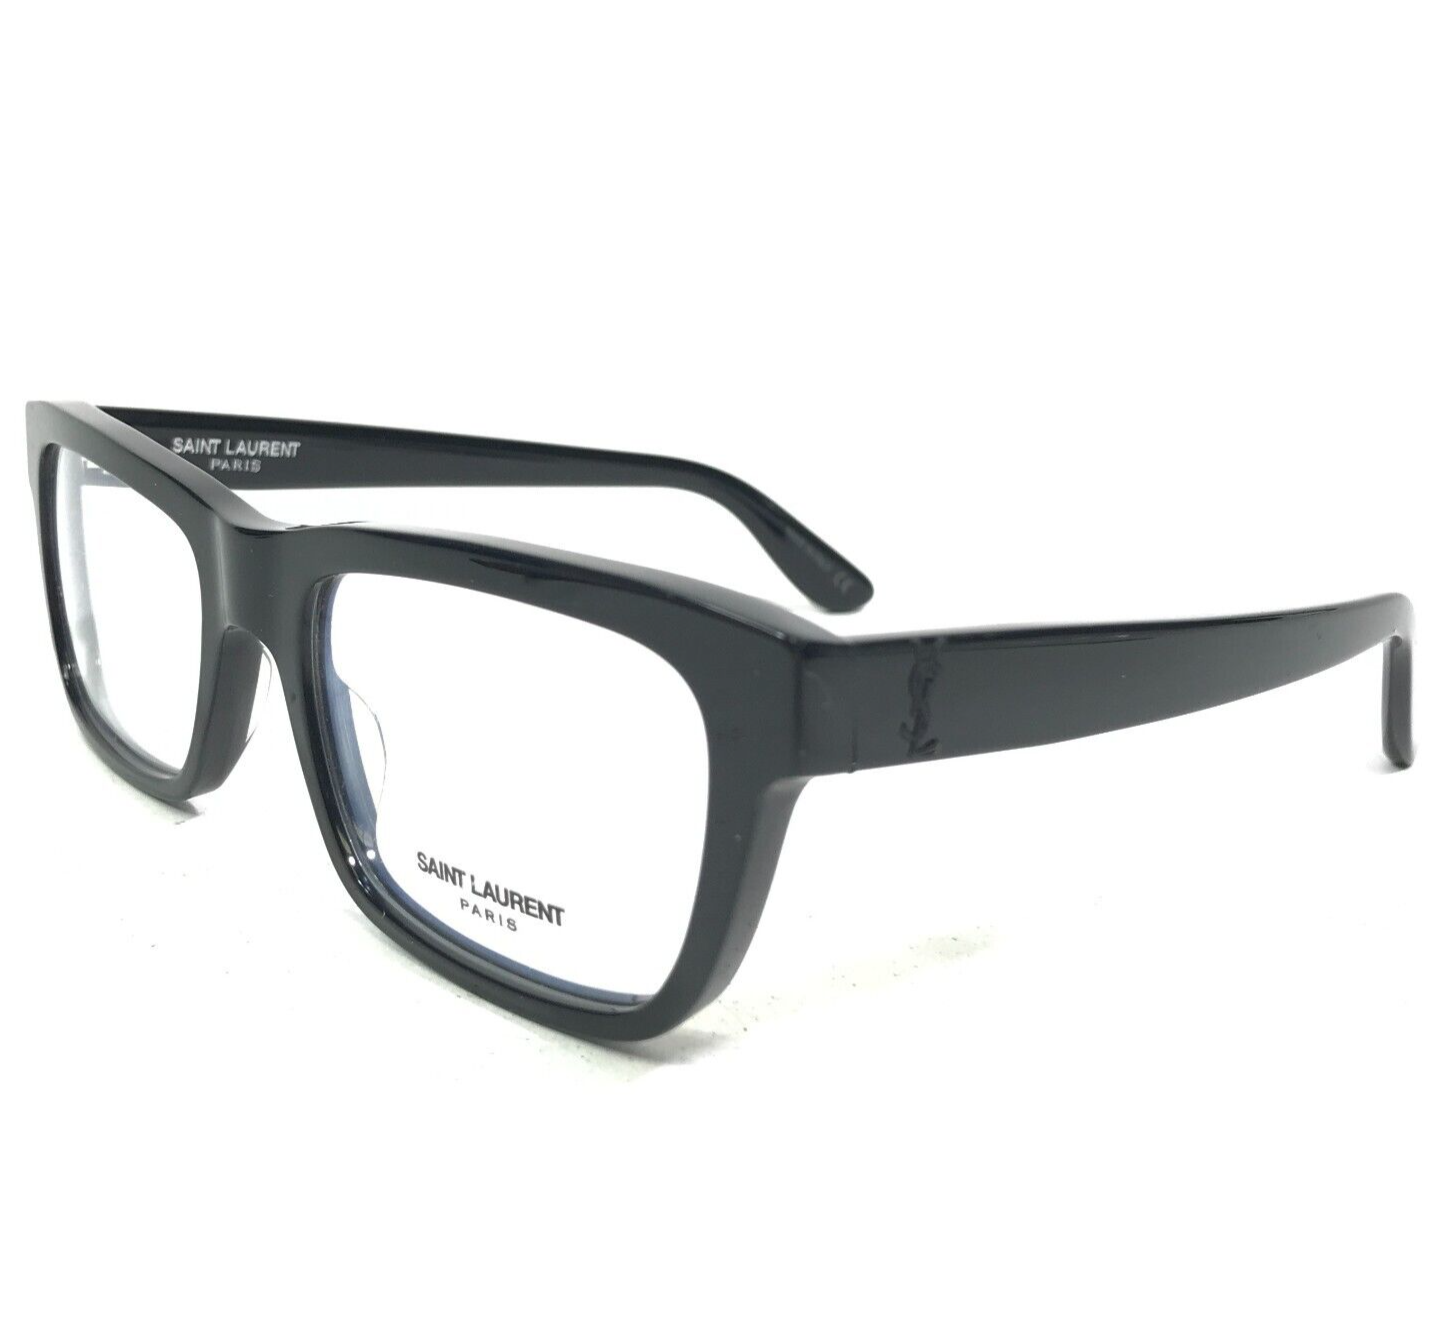 Primary image for Saint Laurent Eyeglasses Frames SL M22 001 Black Square Full Rim 53-19-150